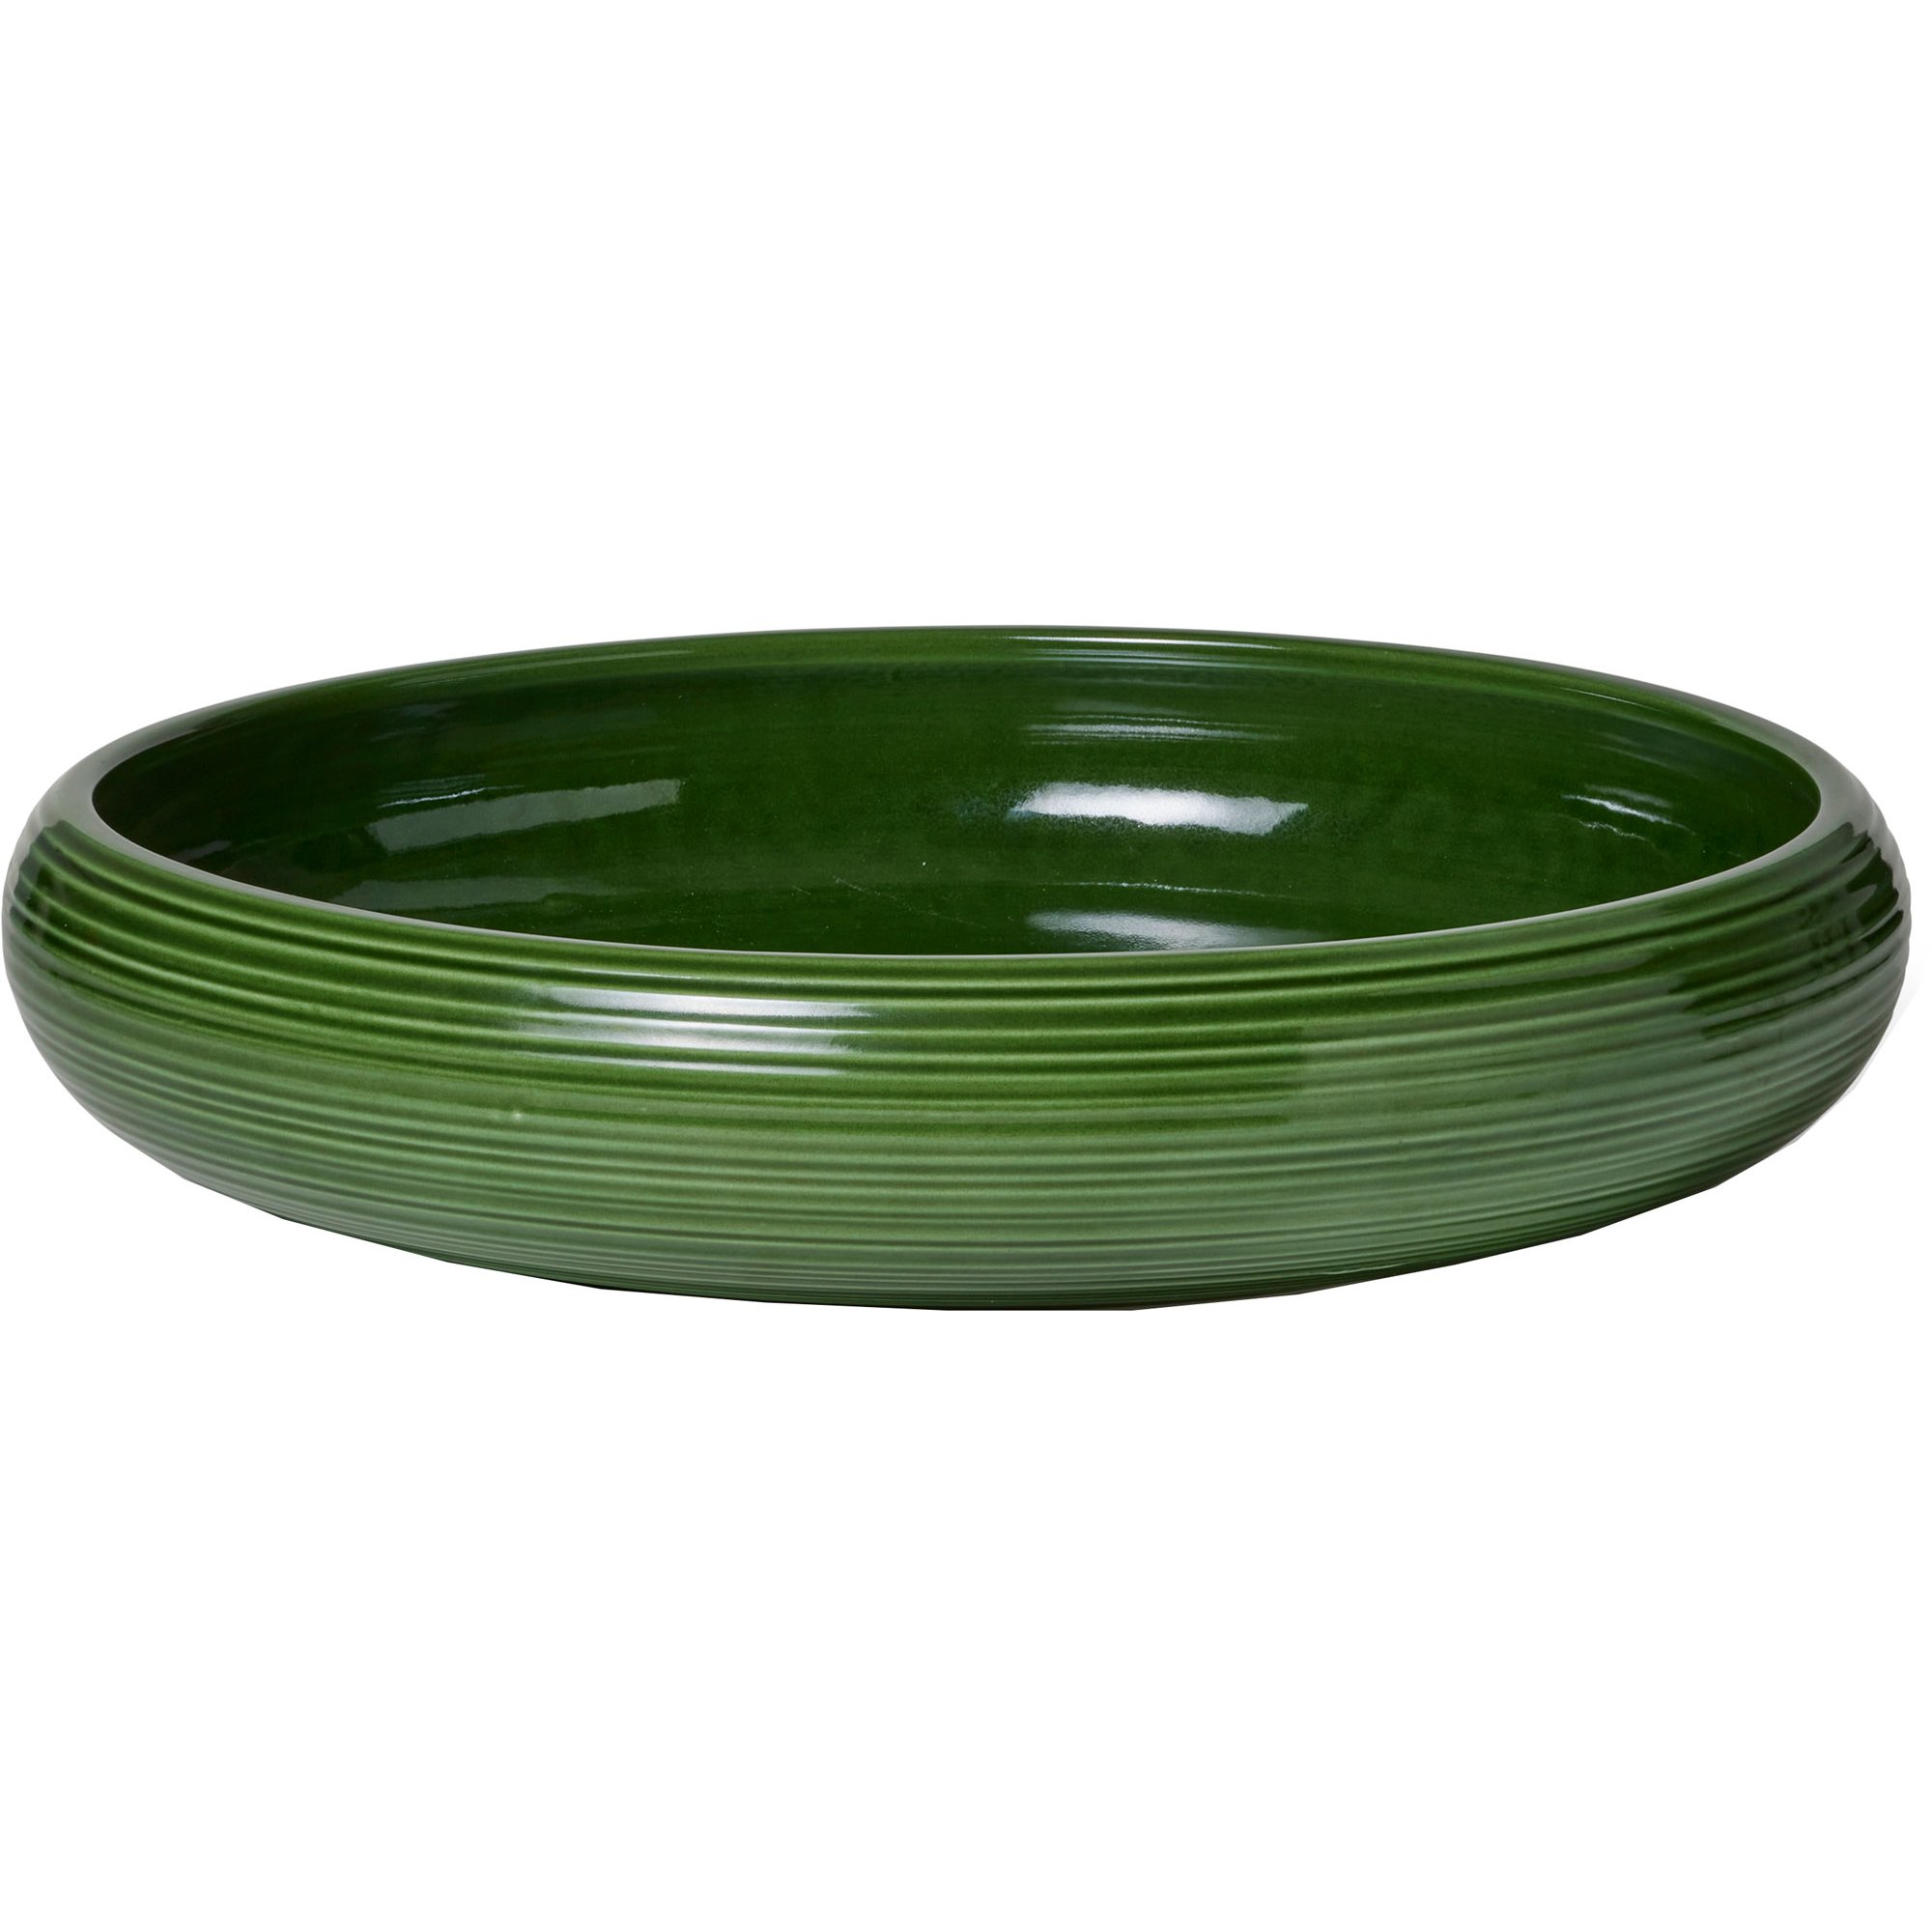 Kähler Colore skål, 34 cm, sage green